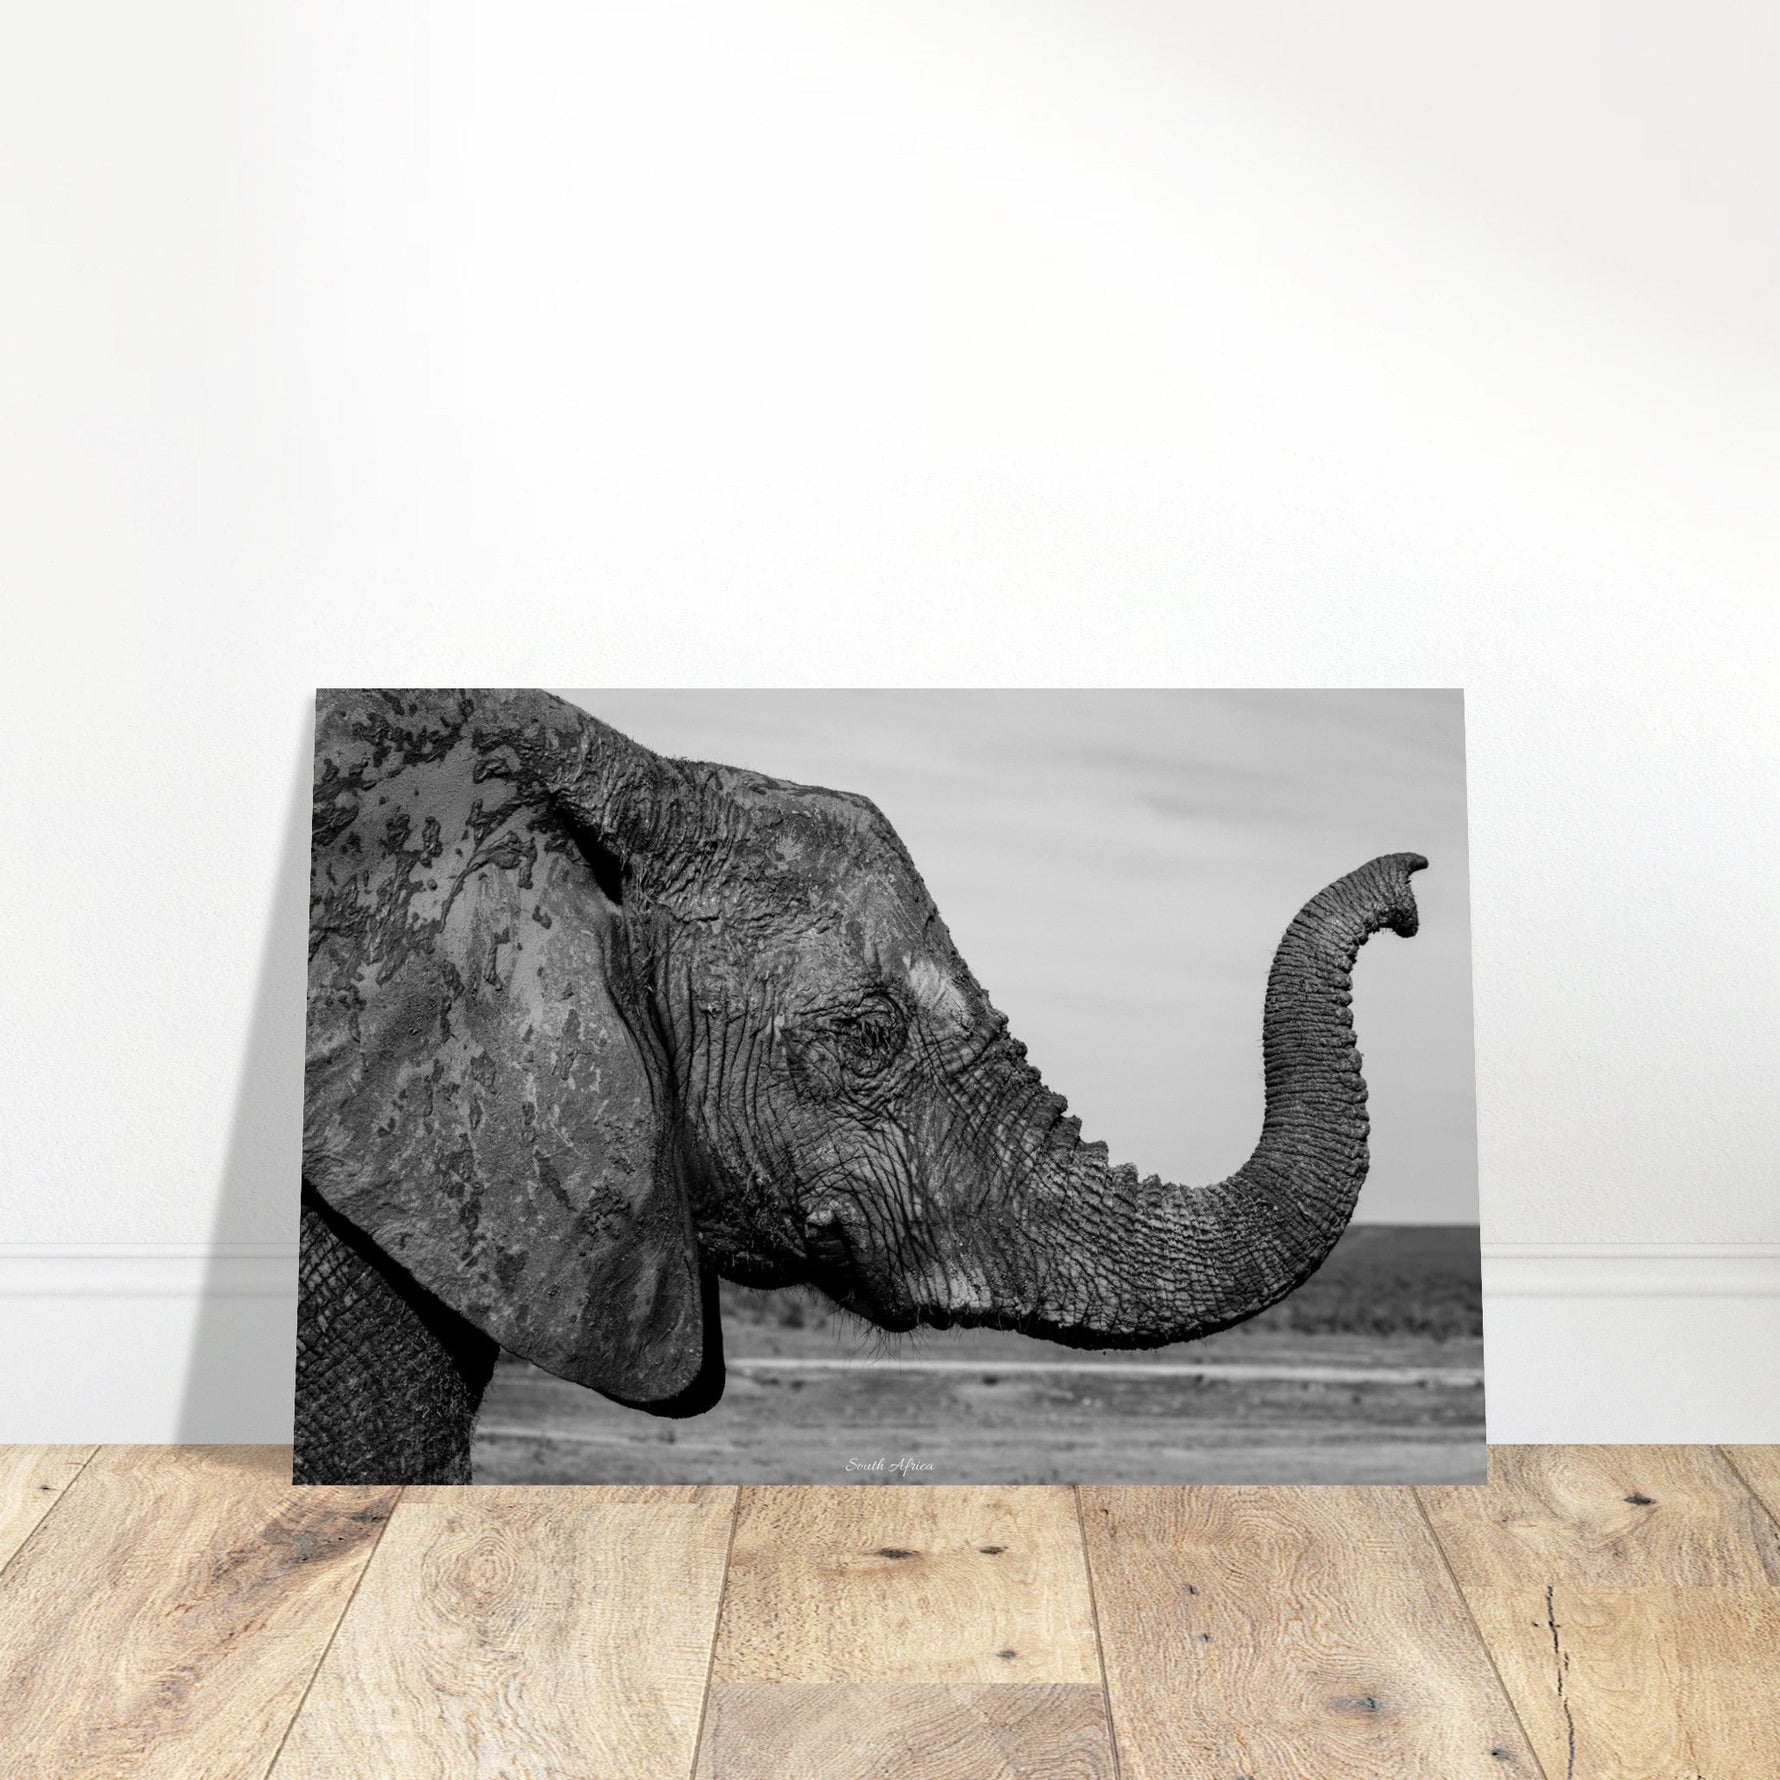 40x60 cm / 16x24″ Premium Matte Paper Poster Intense monochrome Elephant Portrait by Picture This